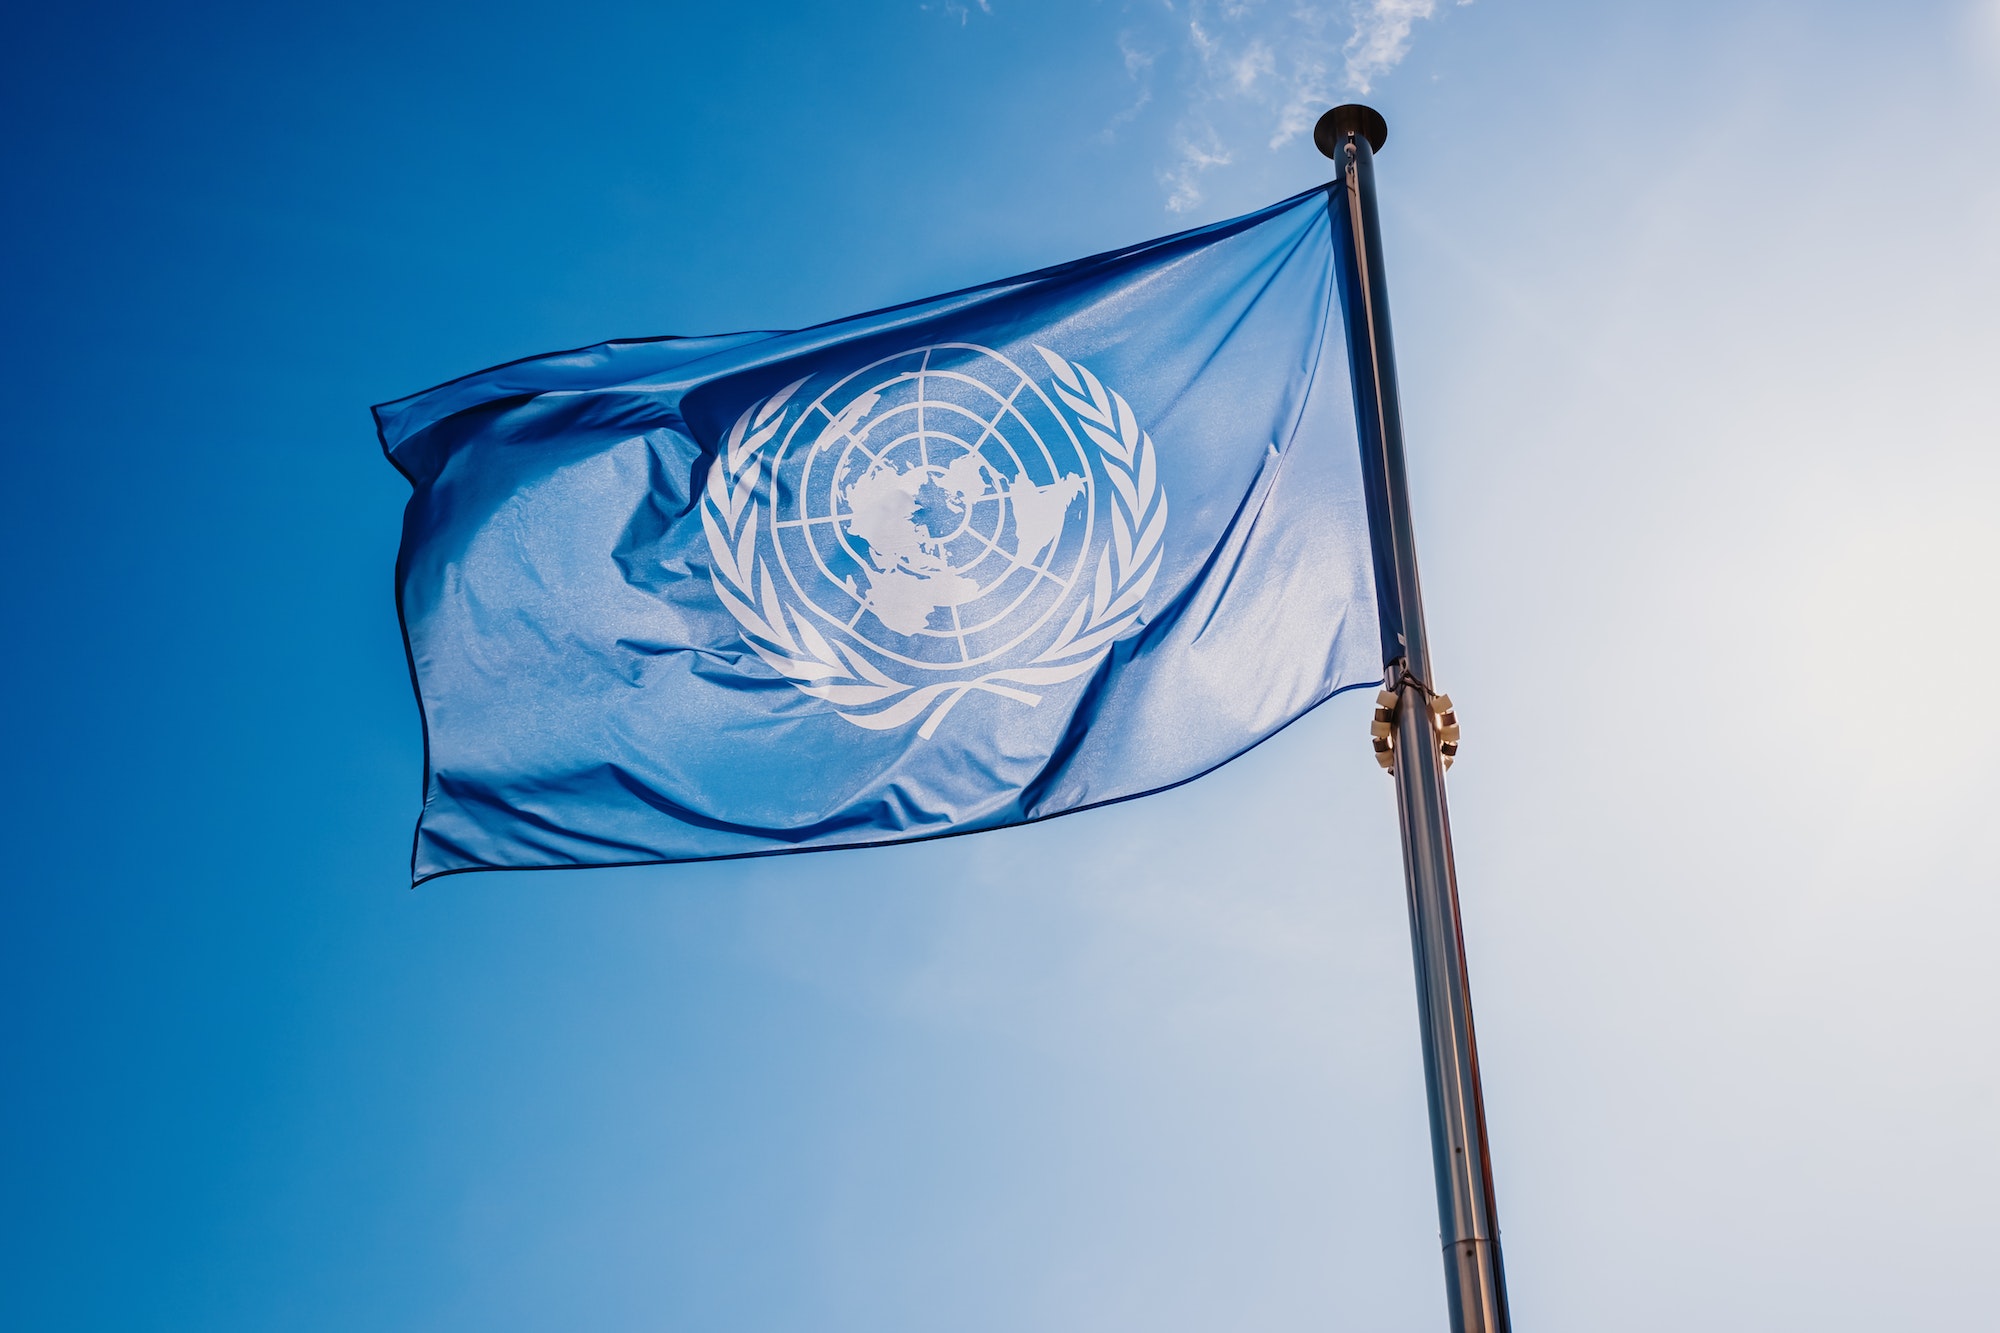 UN flag waved against the sun and blue sky.